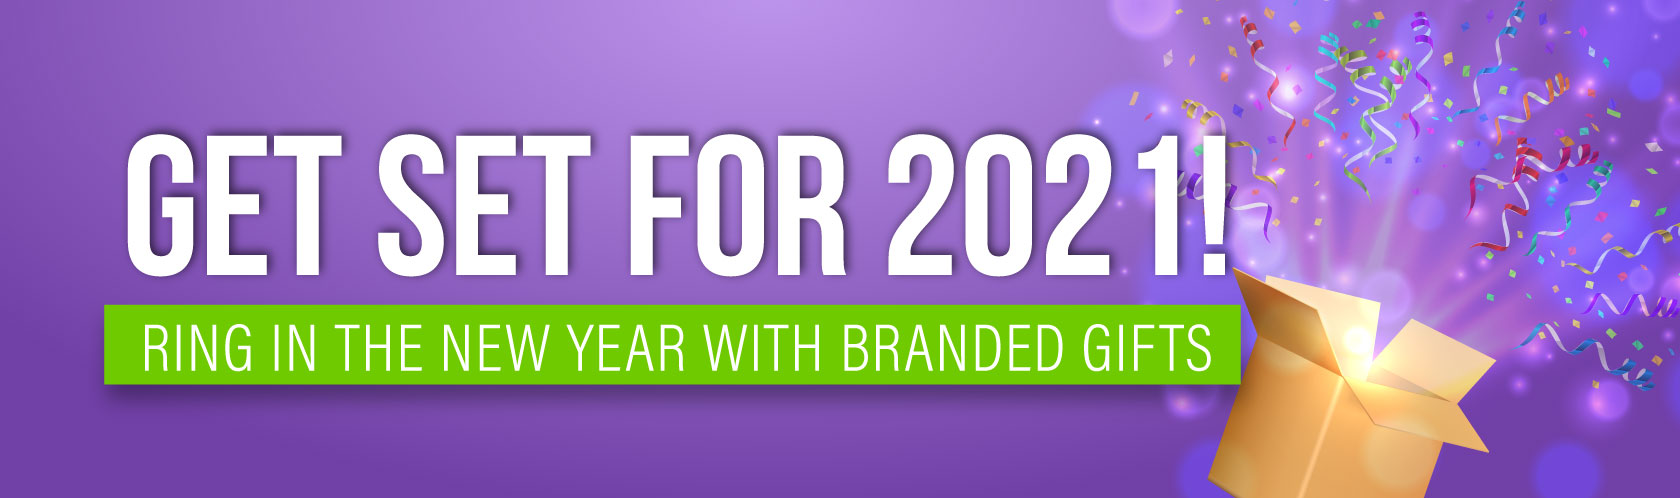 Get Set for 2021!